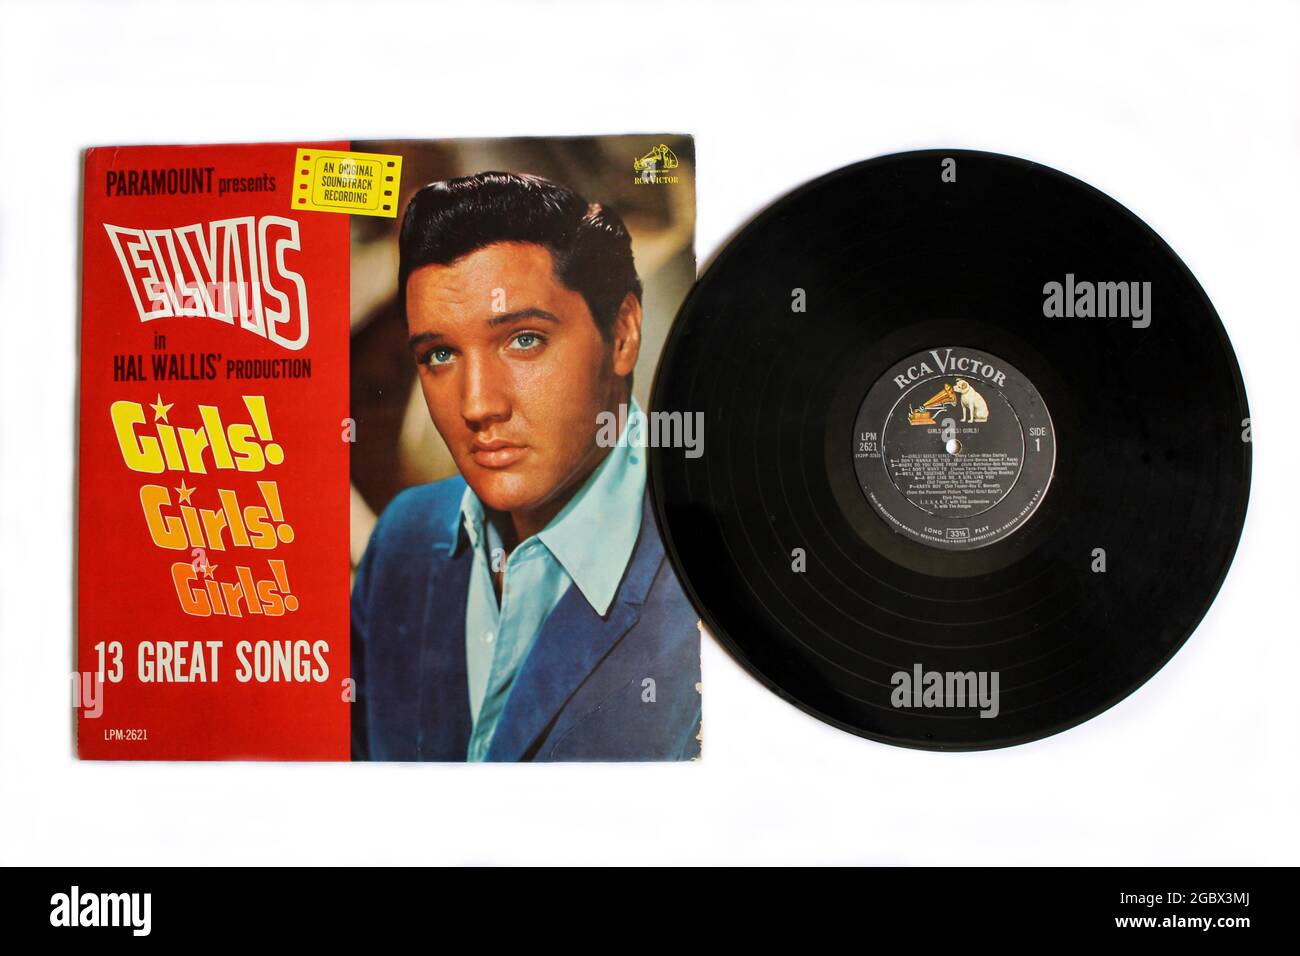 Rock et gospel album de musique de film Elvis sur vinyle disque LP. Filles! Filles! Filles! Est un album de la chanteuse américaine Elvis Presley Banque D'Images